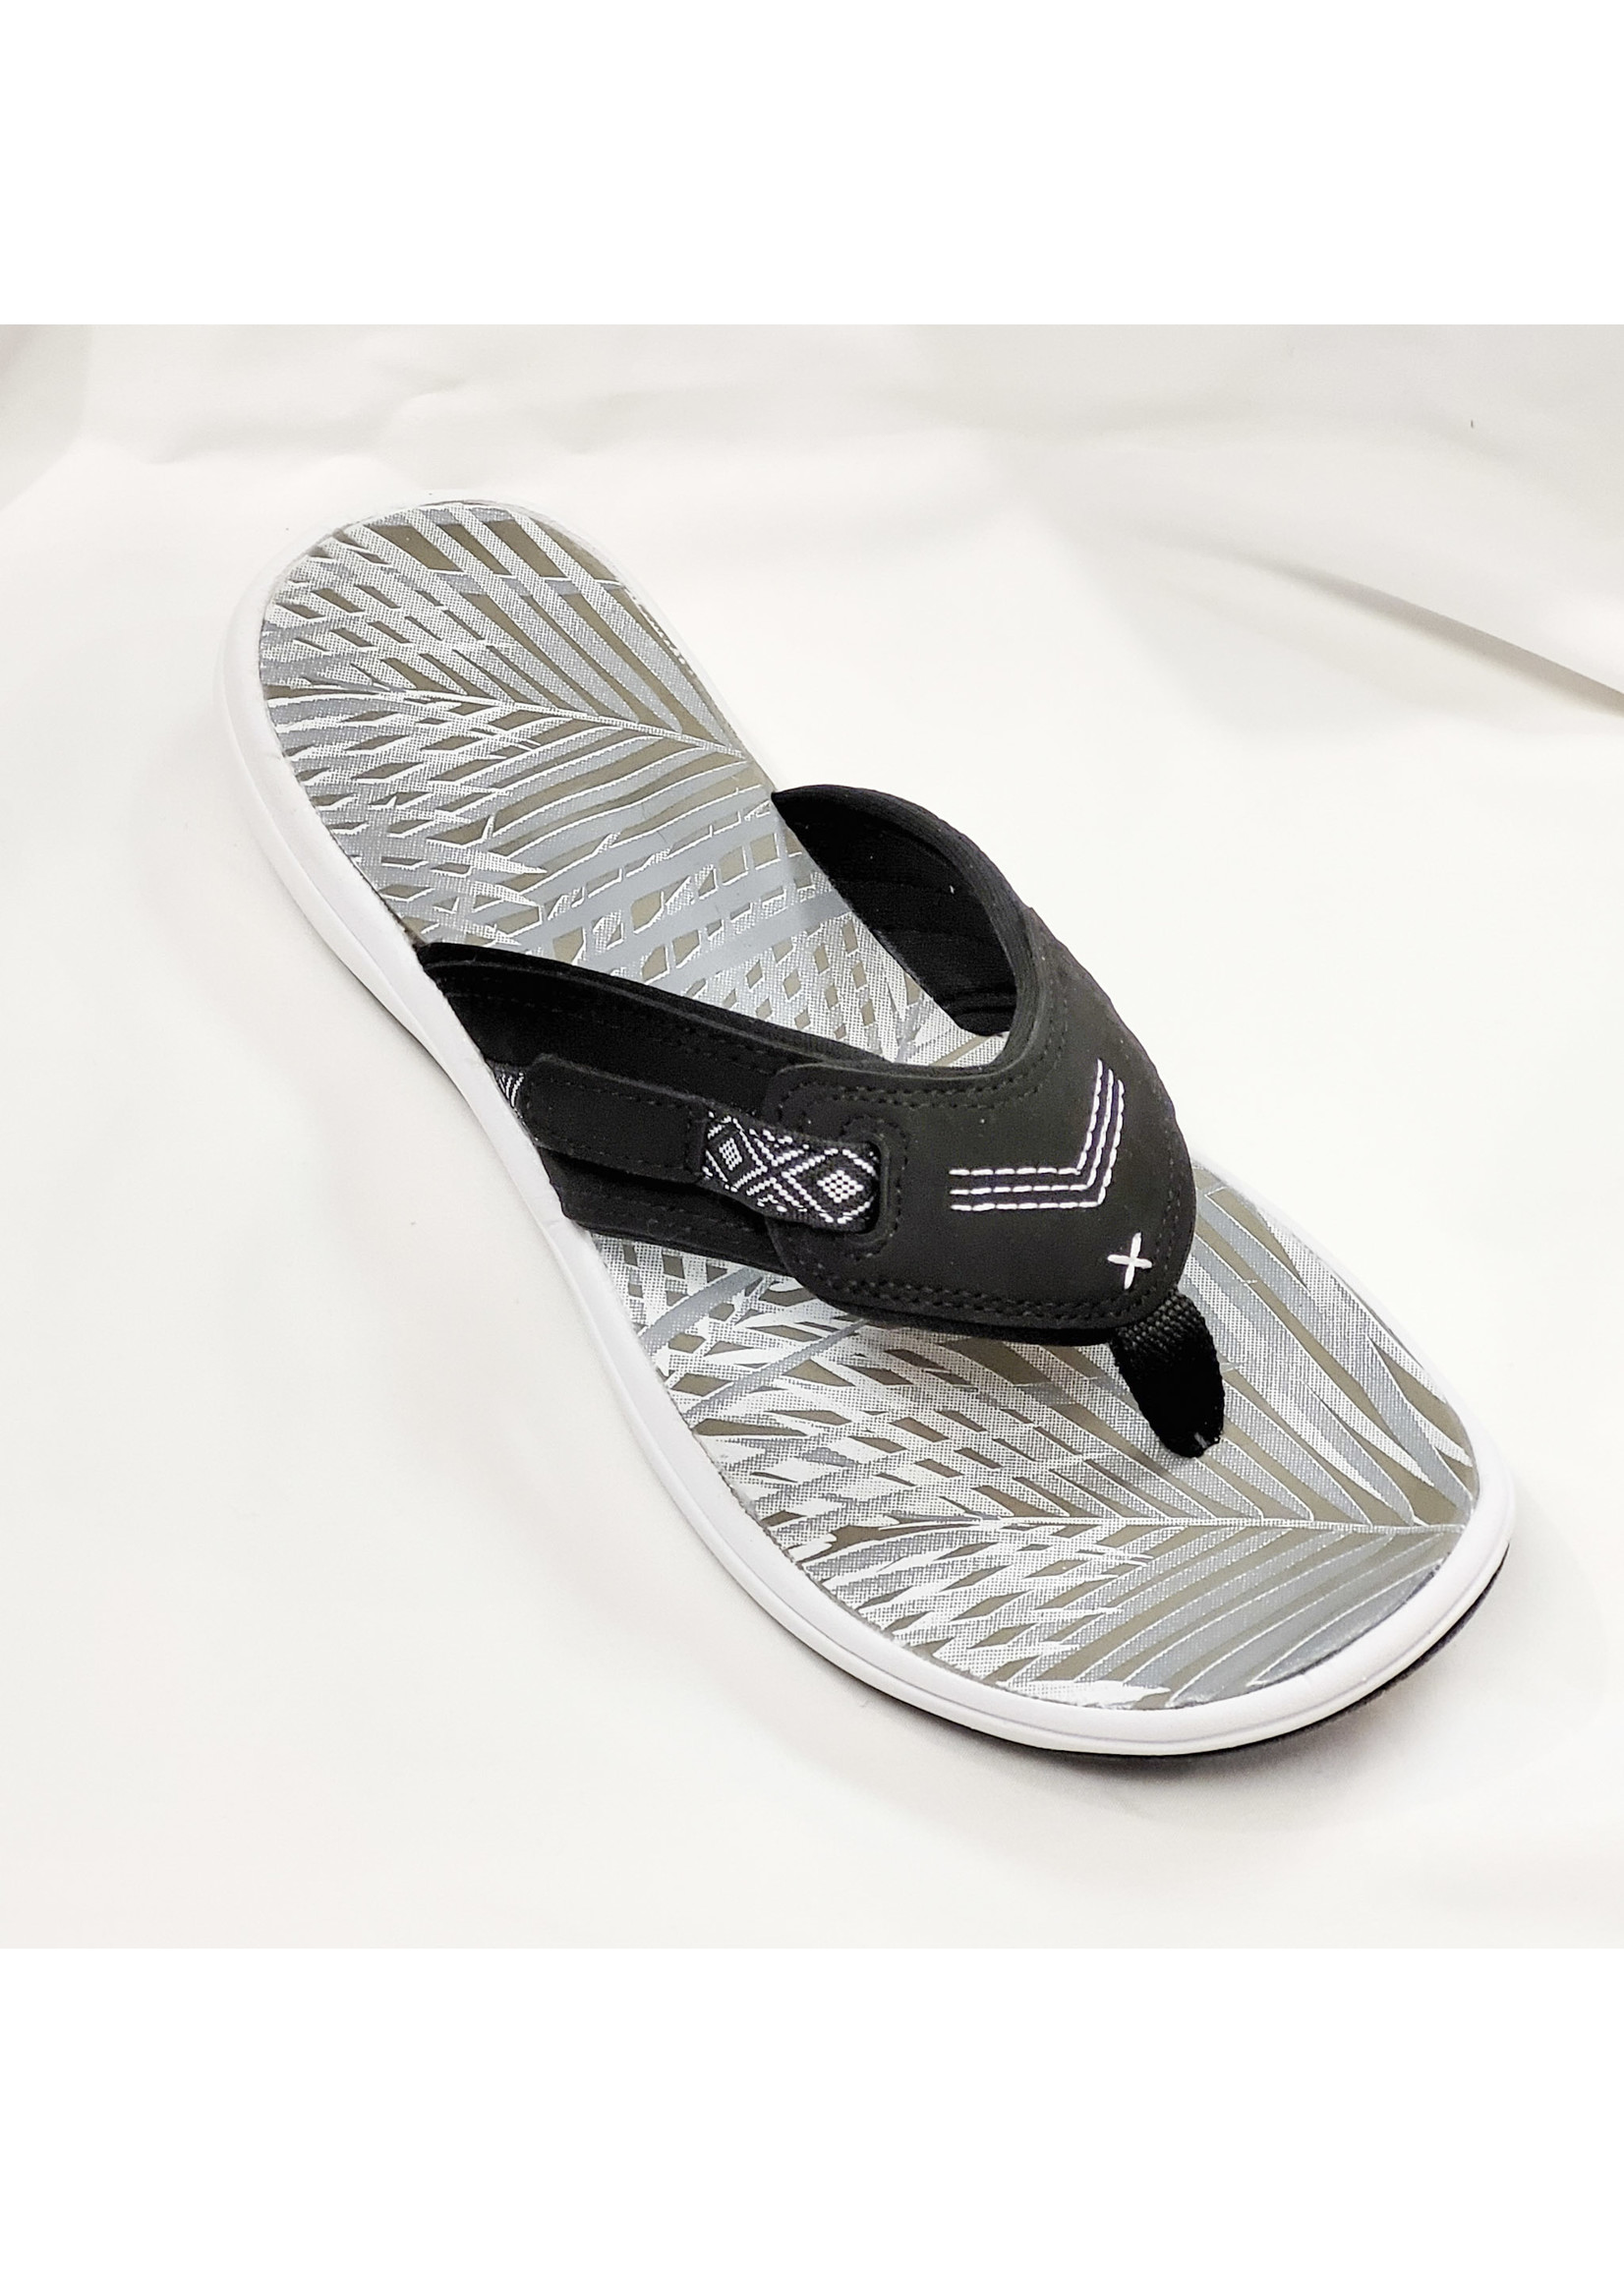 Soft Comfort AdjustableThong Style Sandal